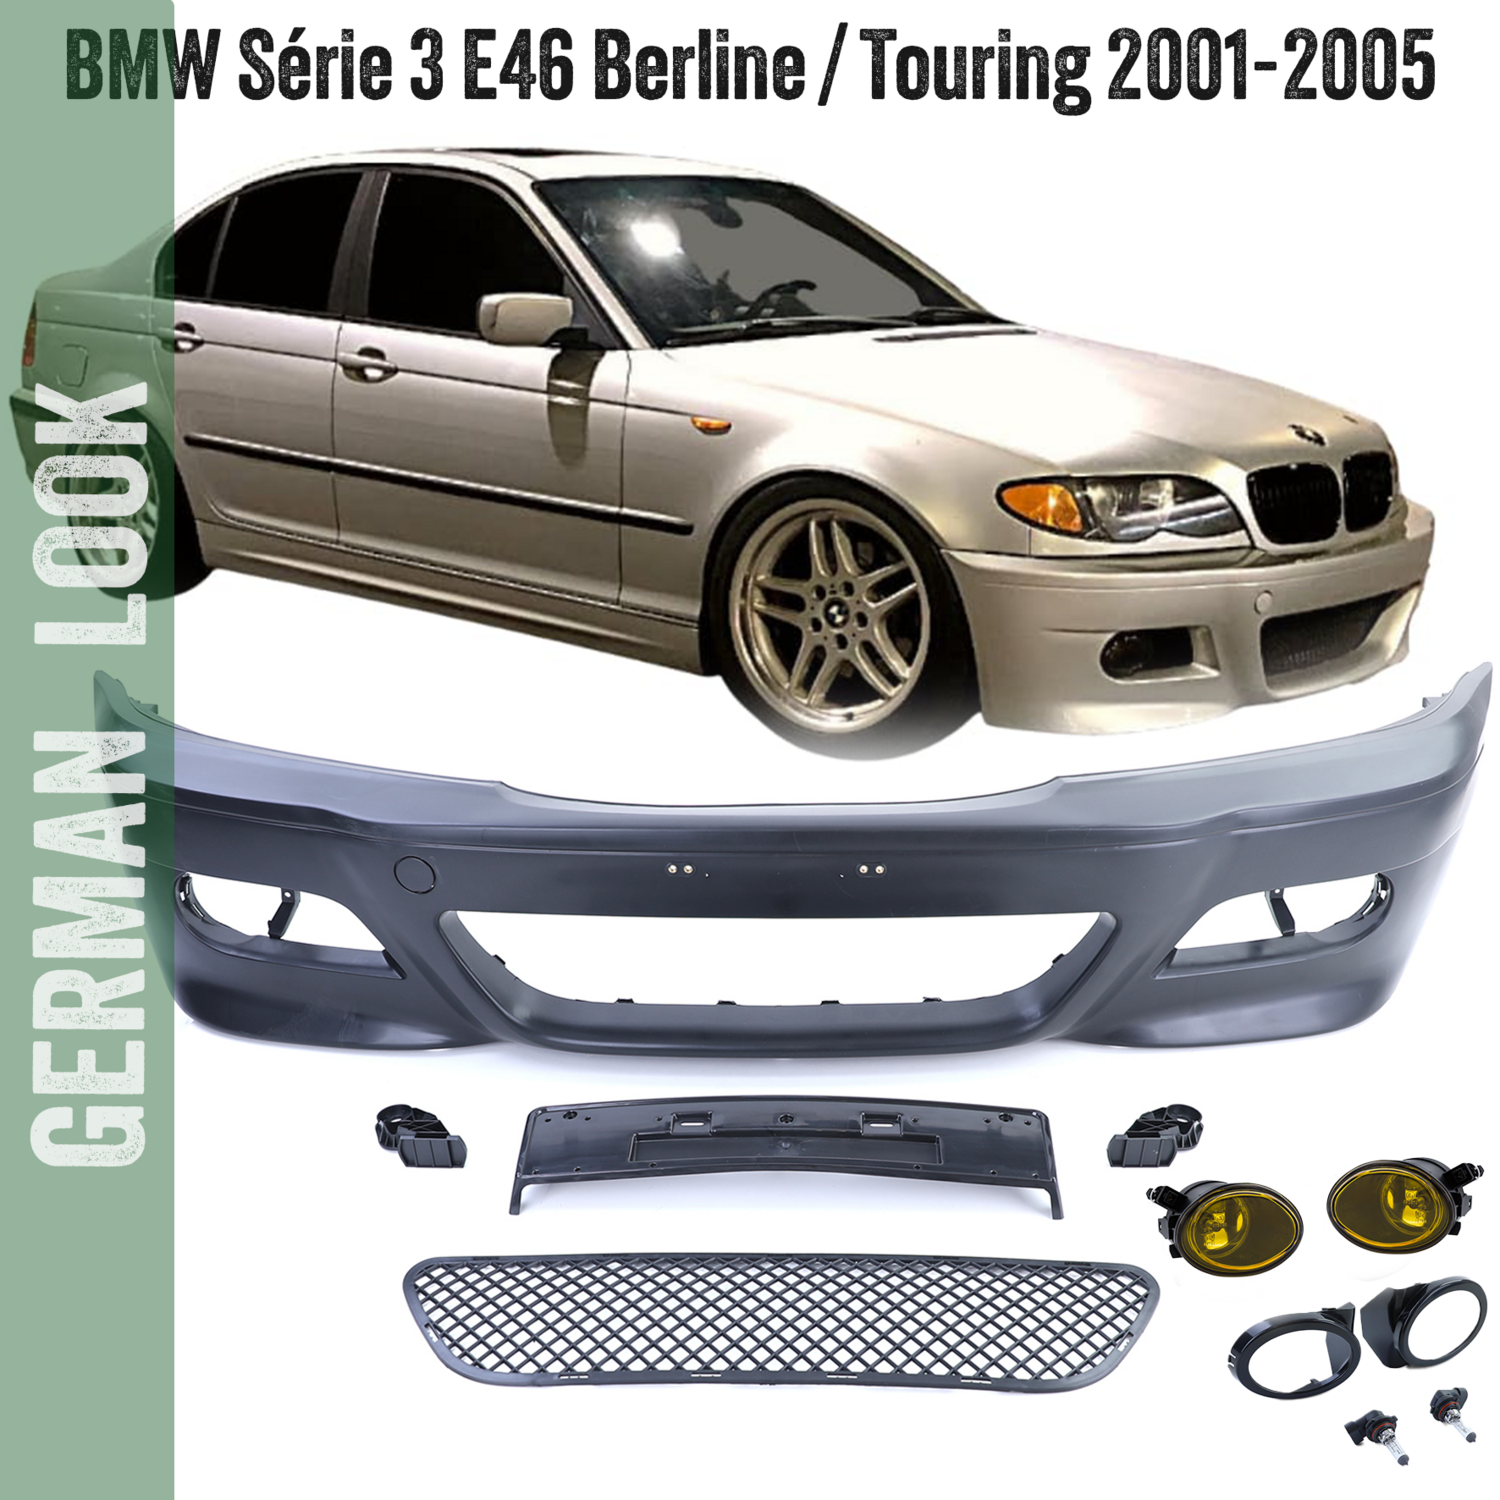 Pare-chocs avant BMW Série 3 E46 Look M3 pour Berline Touring 2001-2005 + Gissières + suport plaque + Antibrouillards jaune